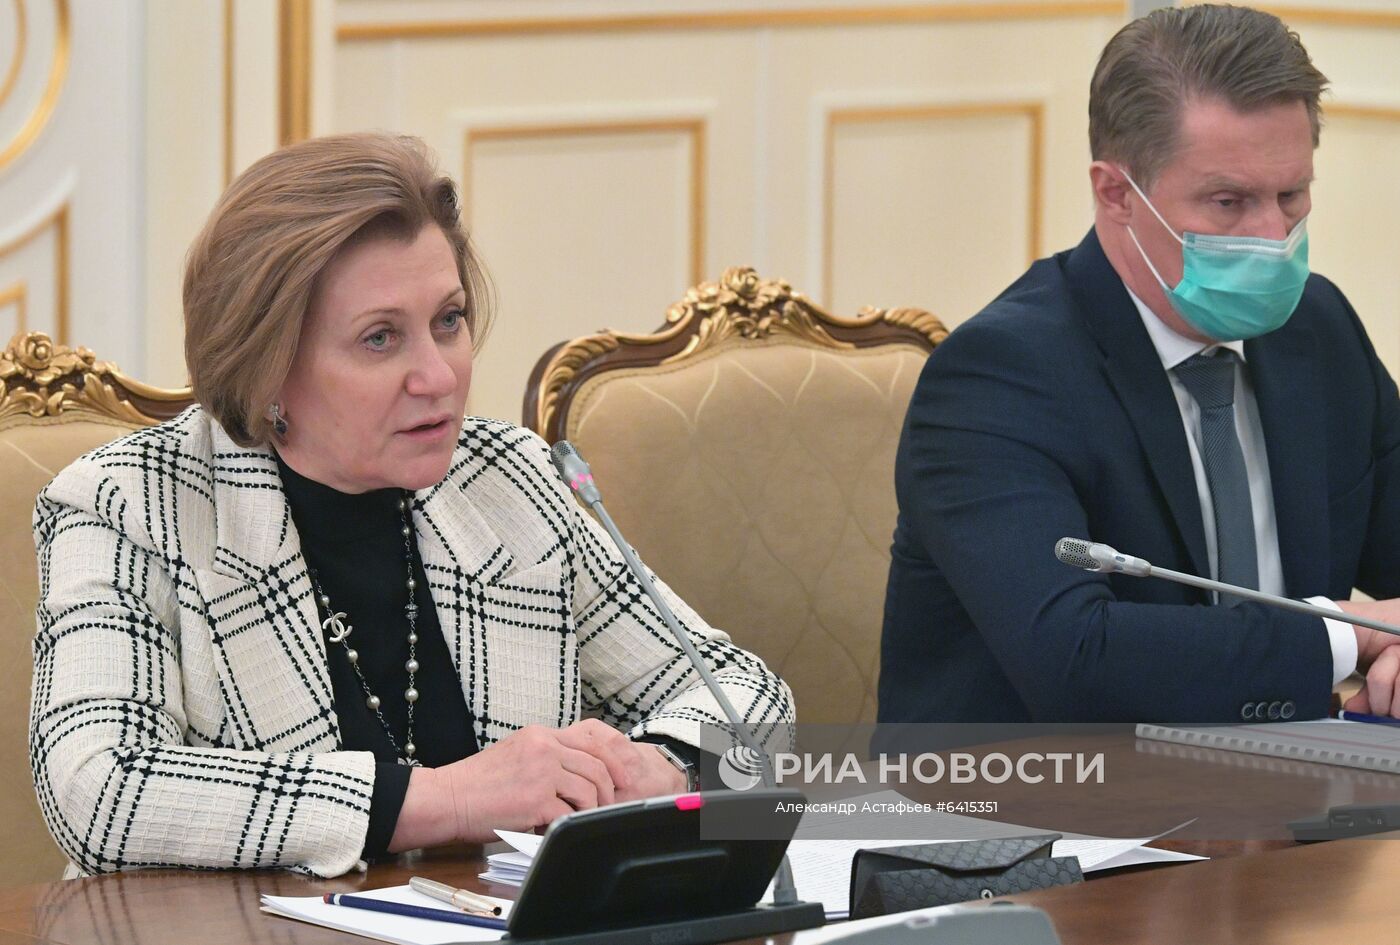 Премьер-министр РФ М. Мишустин провел встречу с производителями вакцин от коронавирусной инфекции